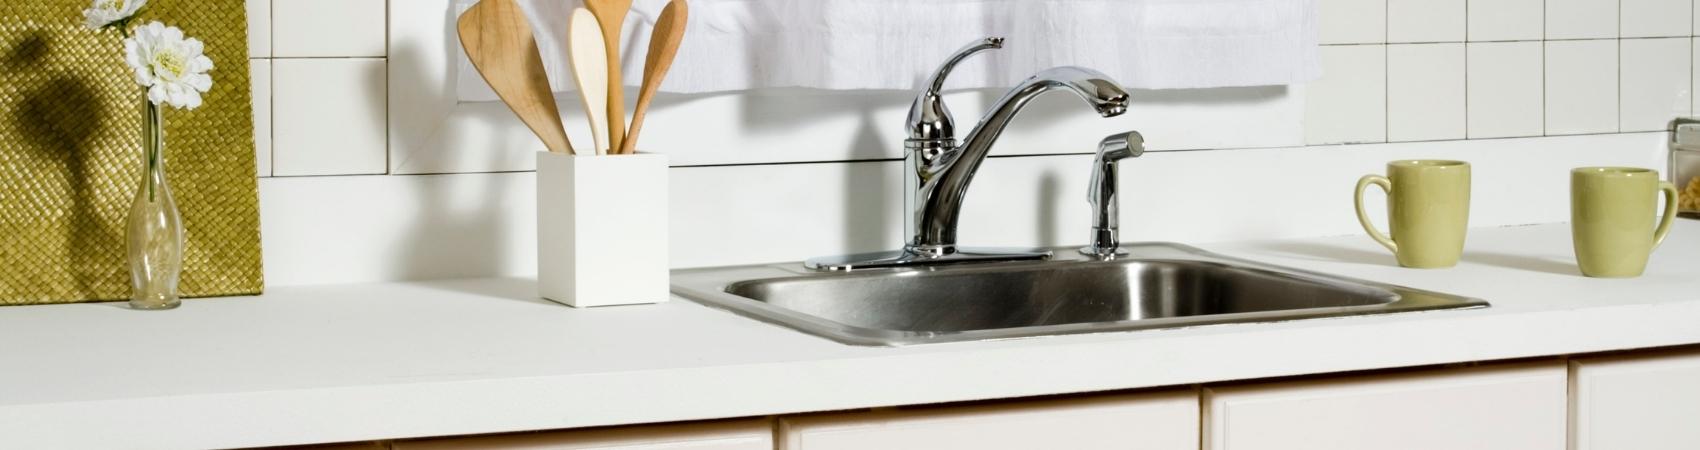 kitchen sink & faucet